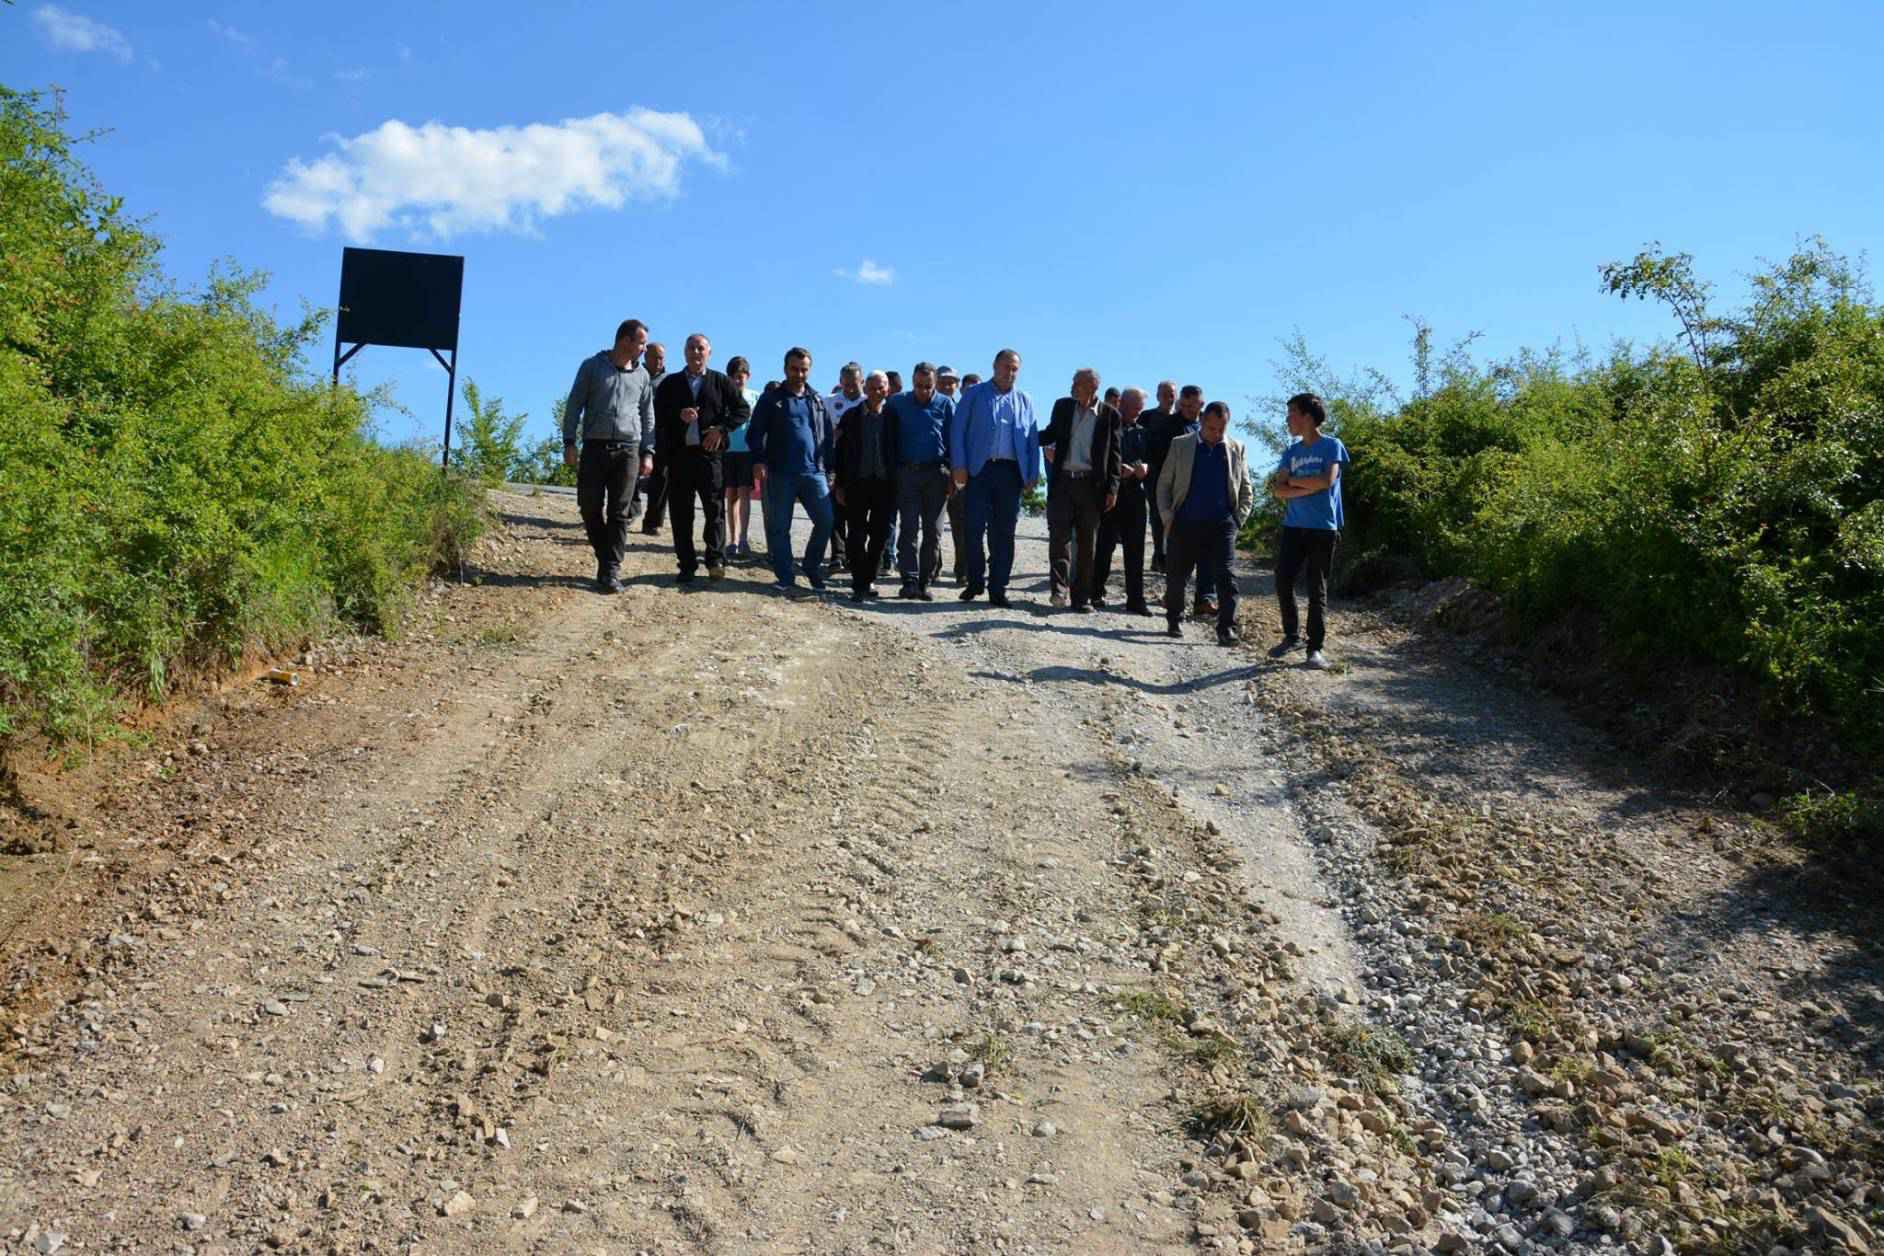 Nisin punimet për asfaltimin e një rrugë në fshatin Shtupel të Klinës